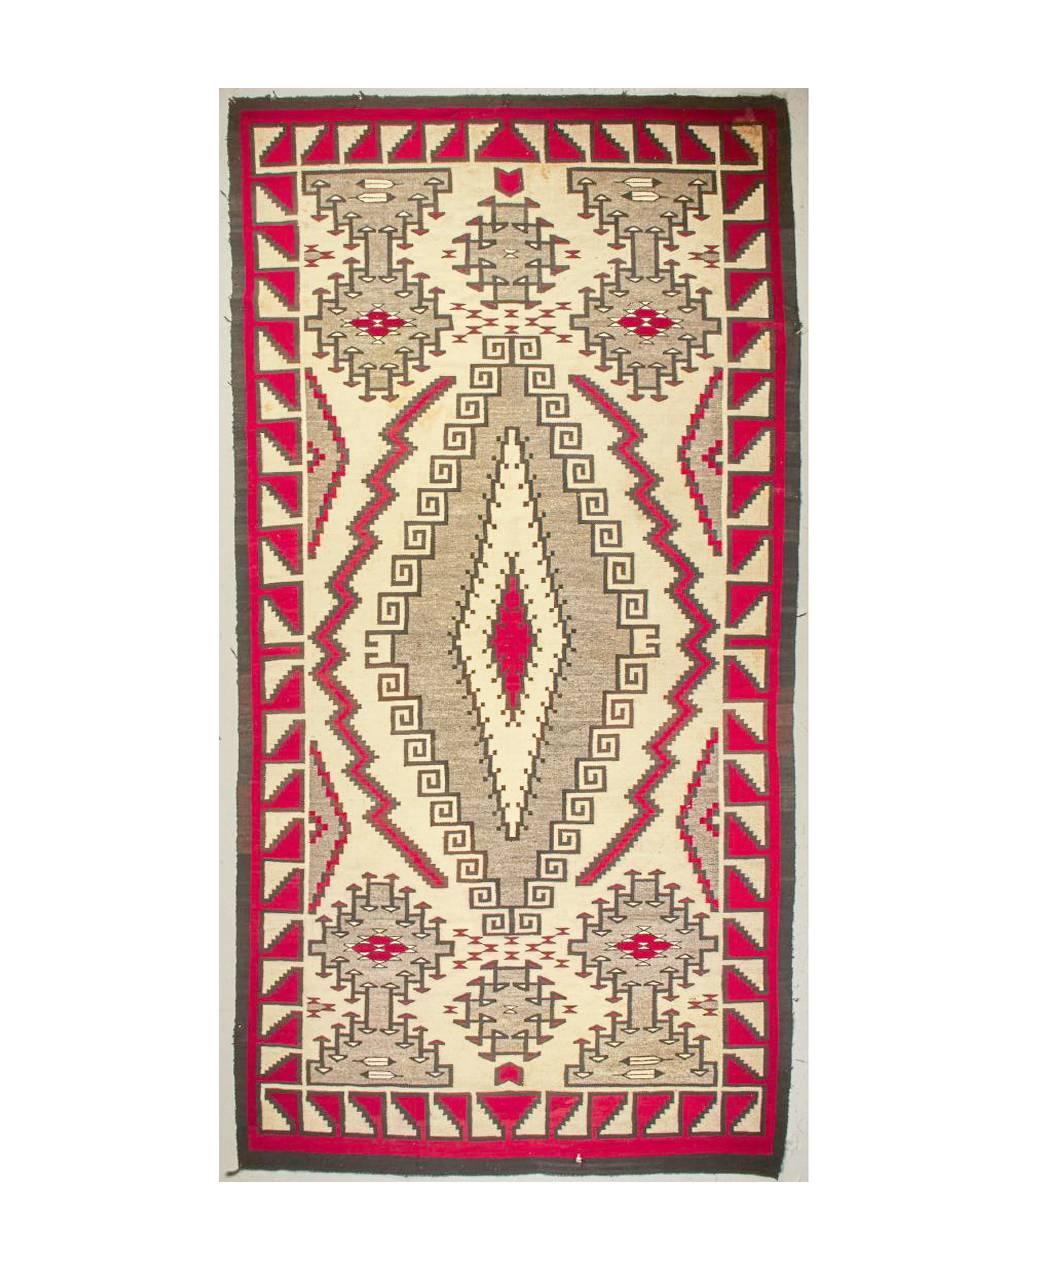 Angeboten wird ein seltener antiker Navajo-Teppich, ein wahrhaft prächtiges Textilstück aus den 1920er bis 1930er Jahren. Dieses Klagetoh-Gewebe zeichnet sich durch seine enorme Größe (68 x 131 Zoll), seine komplizierten Muster und seine